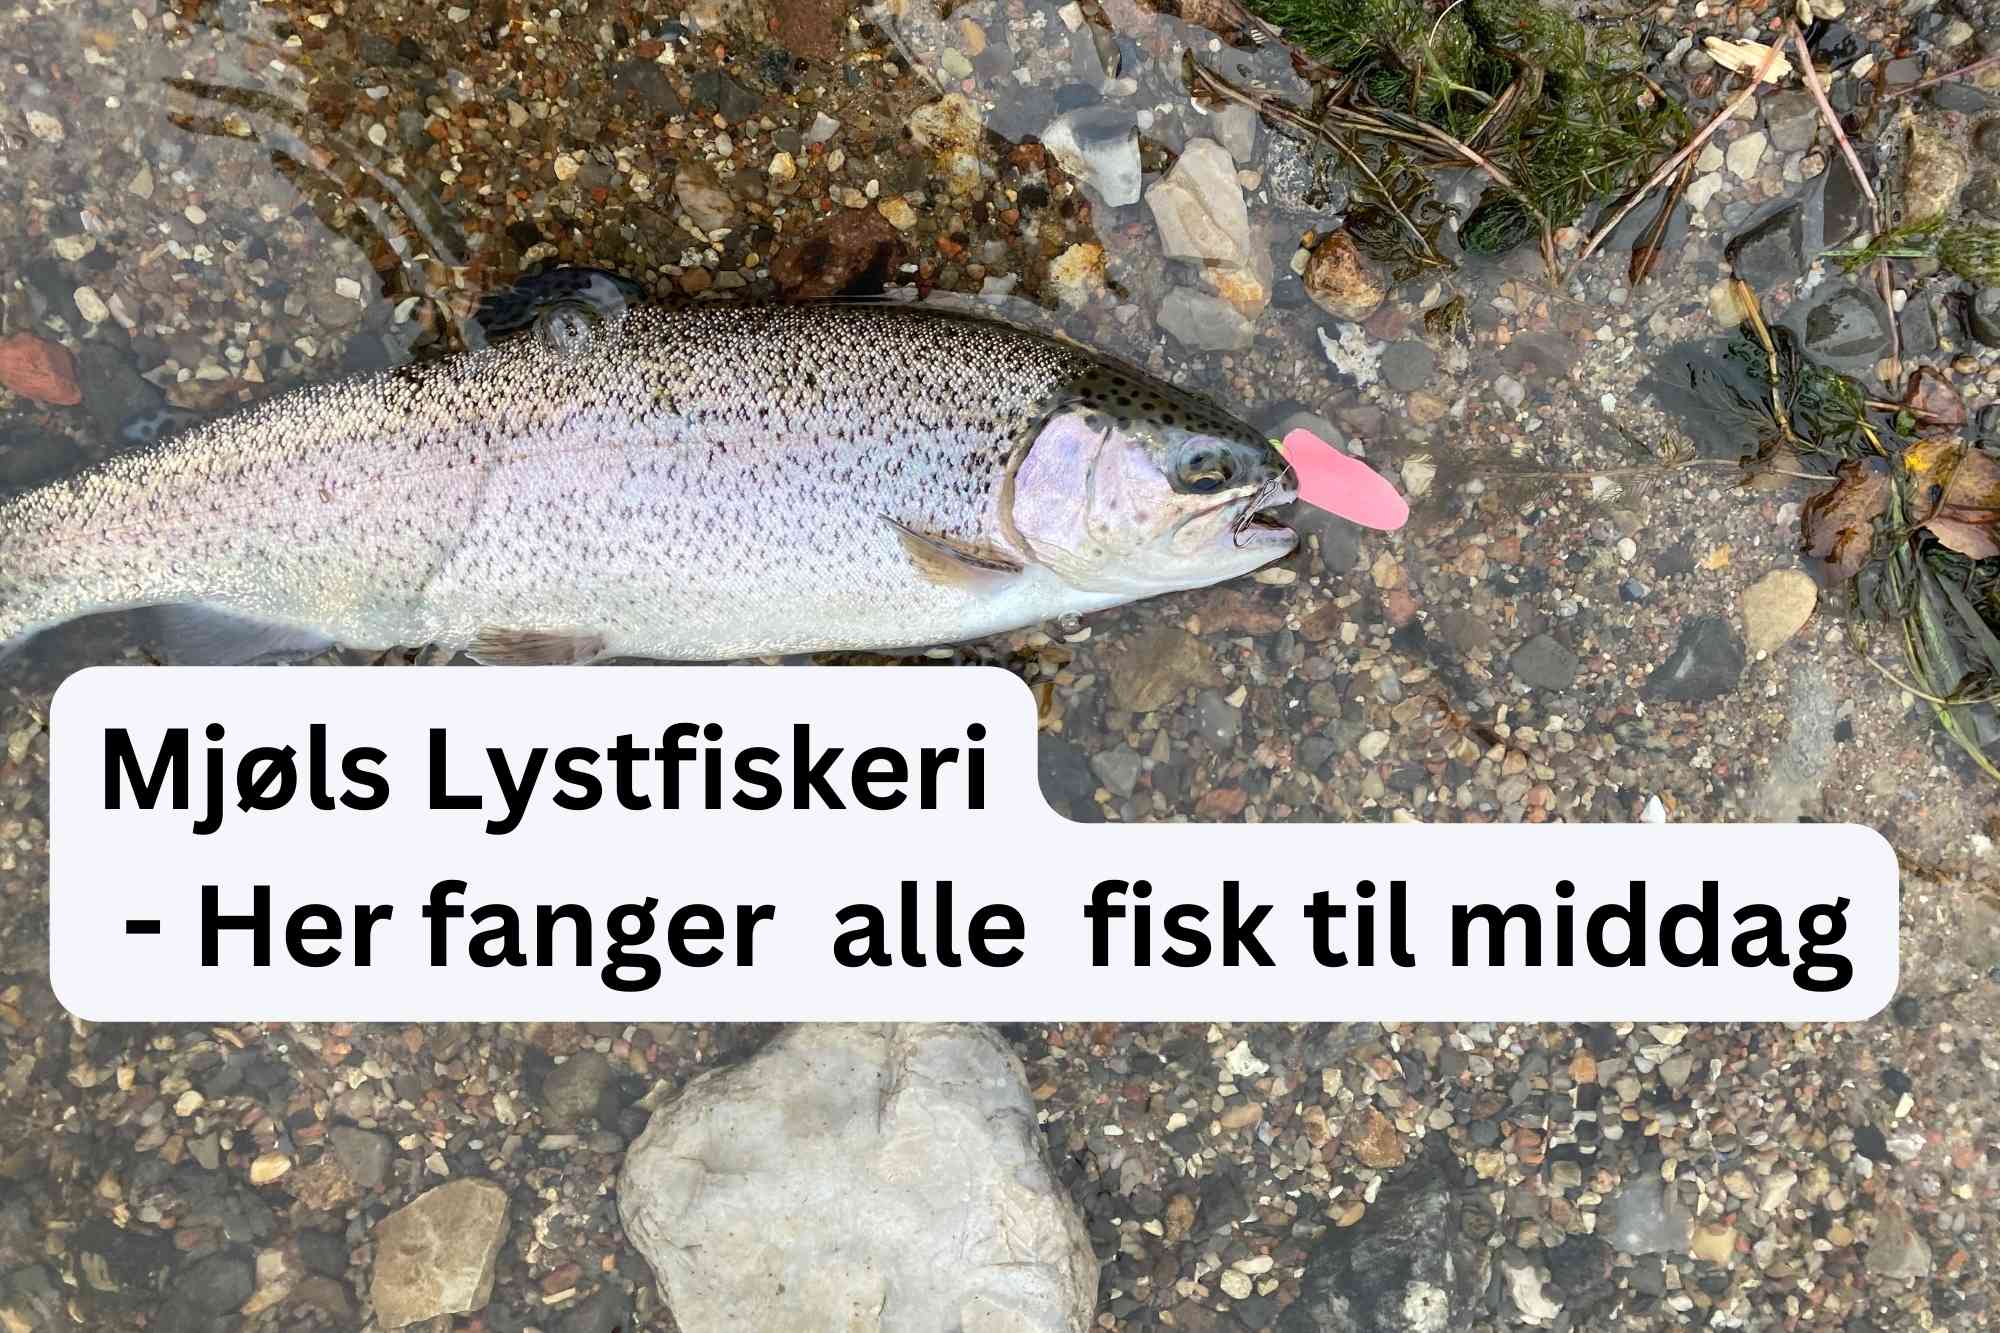 SE VIDEO: – Tag til Mjøls Lystfiskeri og få fisk på krogen